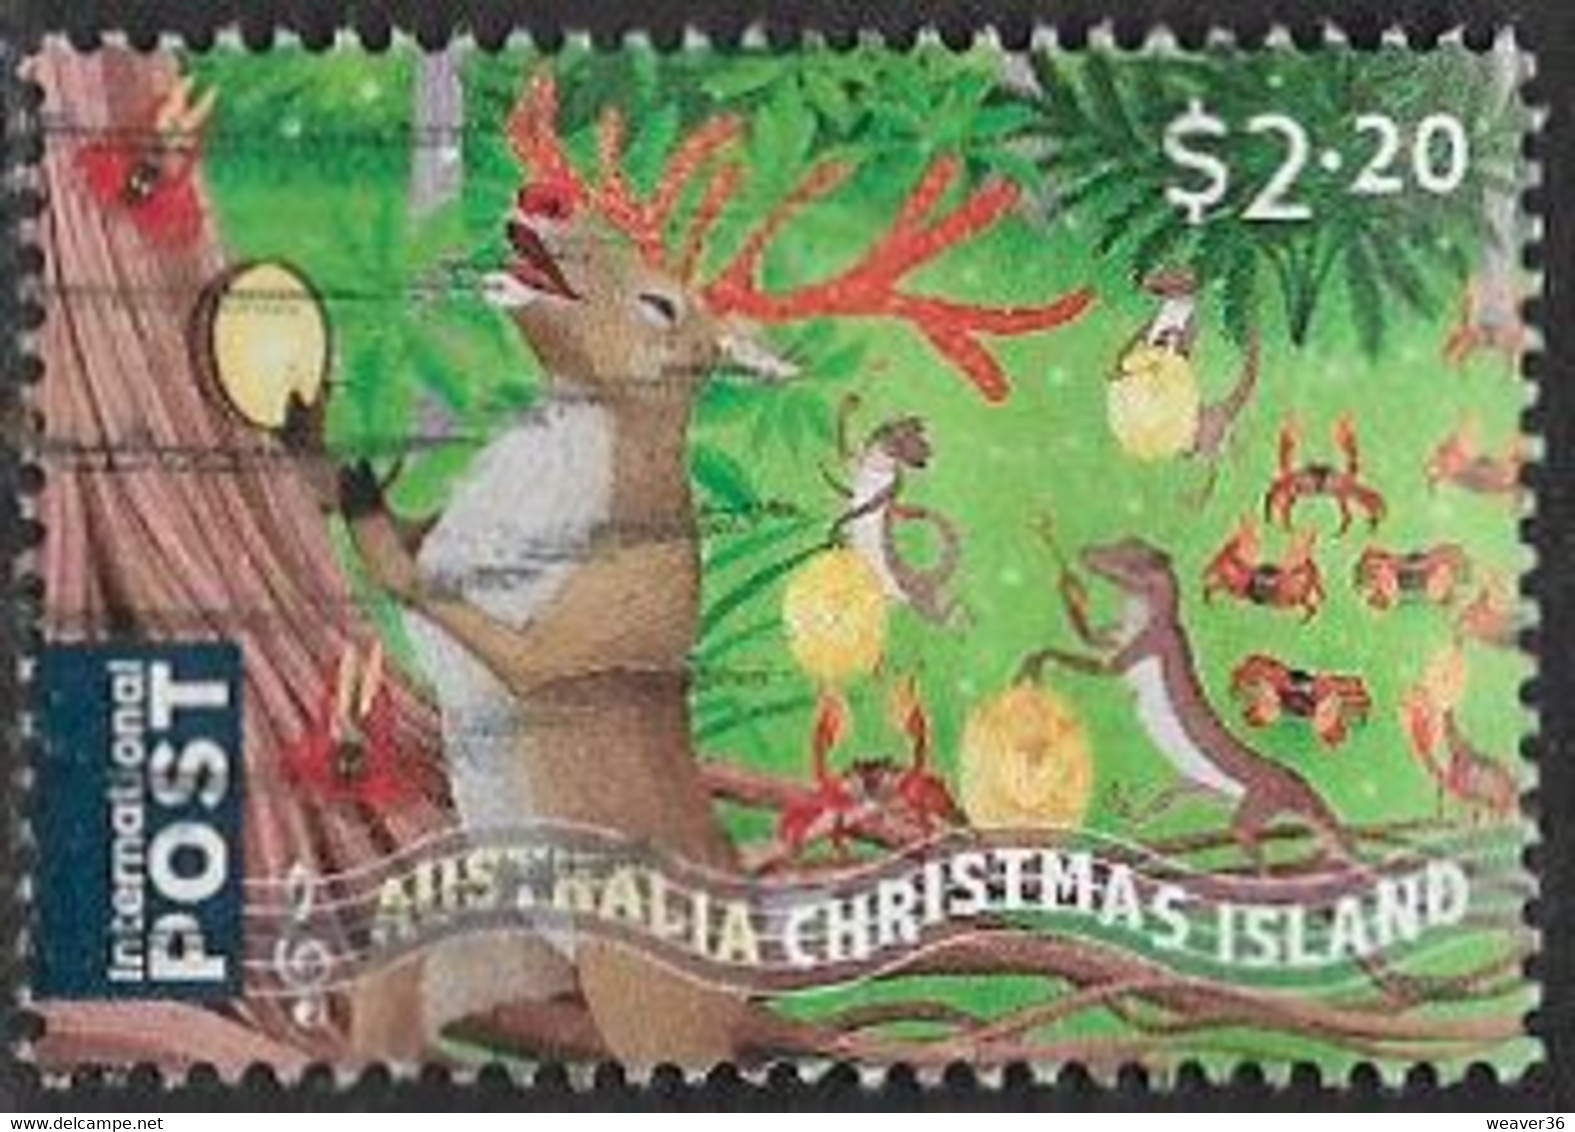 Christmas Island 2020 Christmas $2.20 Sheet Stamp Good/fine Used [39/31722A/ND] - Christmas Island